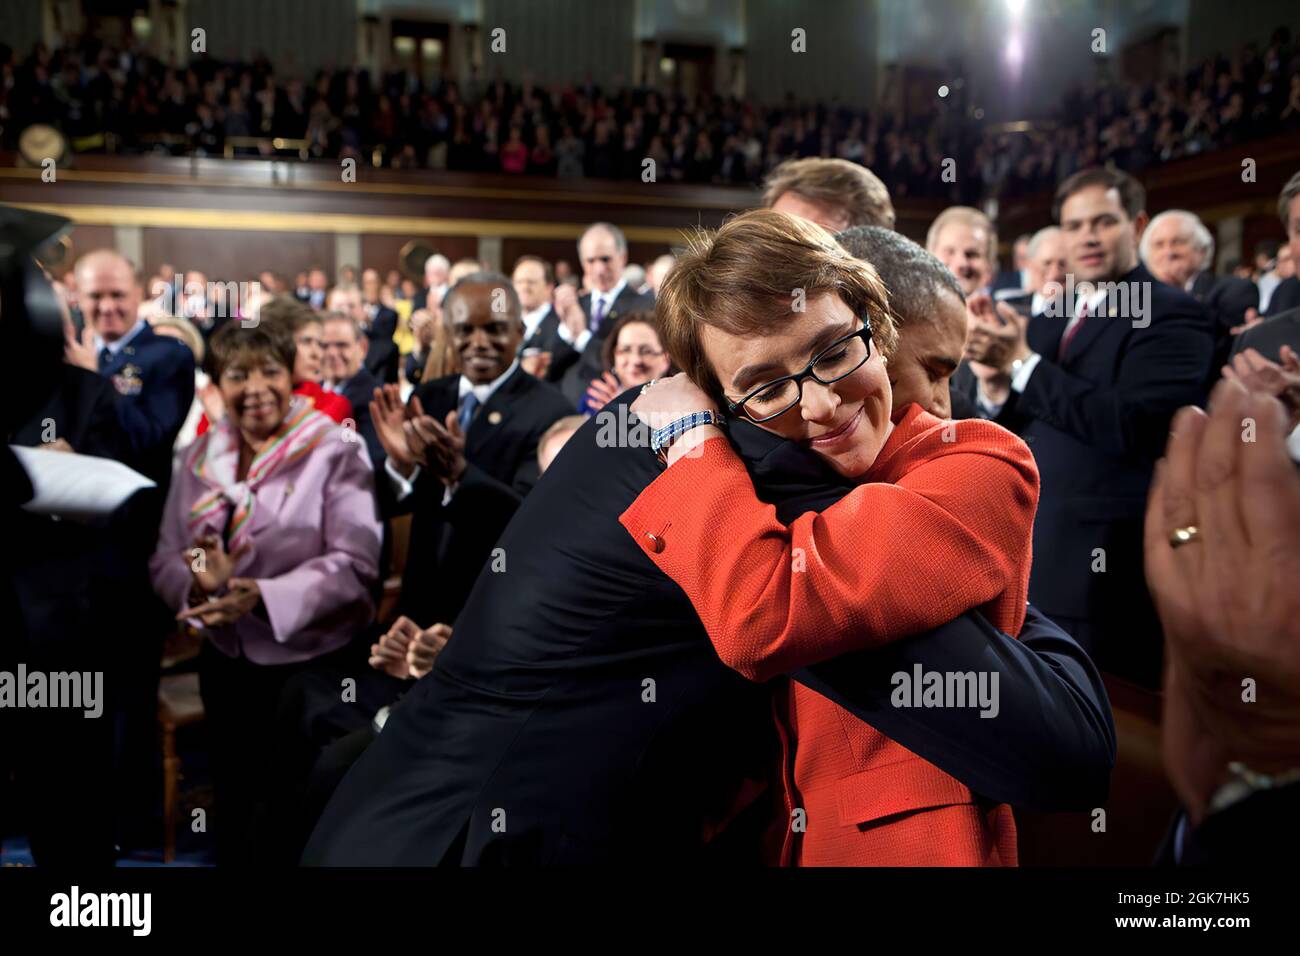 24 janv. 2012'l'un des moments les plus mémorables de l'année a été lorsque le président a embrassé la Représentante Gabrielle Giffords alors qu'il s'est promené sur le plancher de la Chambre au Capitole des États-Unis pour présenter son discours annuel sur l'état de l'Union.' (Photo officielle de la Maison Blanche par Pete Souza) cette photo officielle de la Maison Blanche est disponible uniquement pour publication par les organismes de presse et/ou pour impression personnelle par le(s) sujet(s) de la photo. La photographie ne peut être manipulée d'aucune manière et ne peut pas être utilisée dans des documents commerciaux ou politiques, des publicités, des courriels, des produits, des promotions Banque D'Images